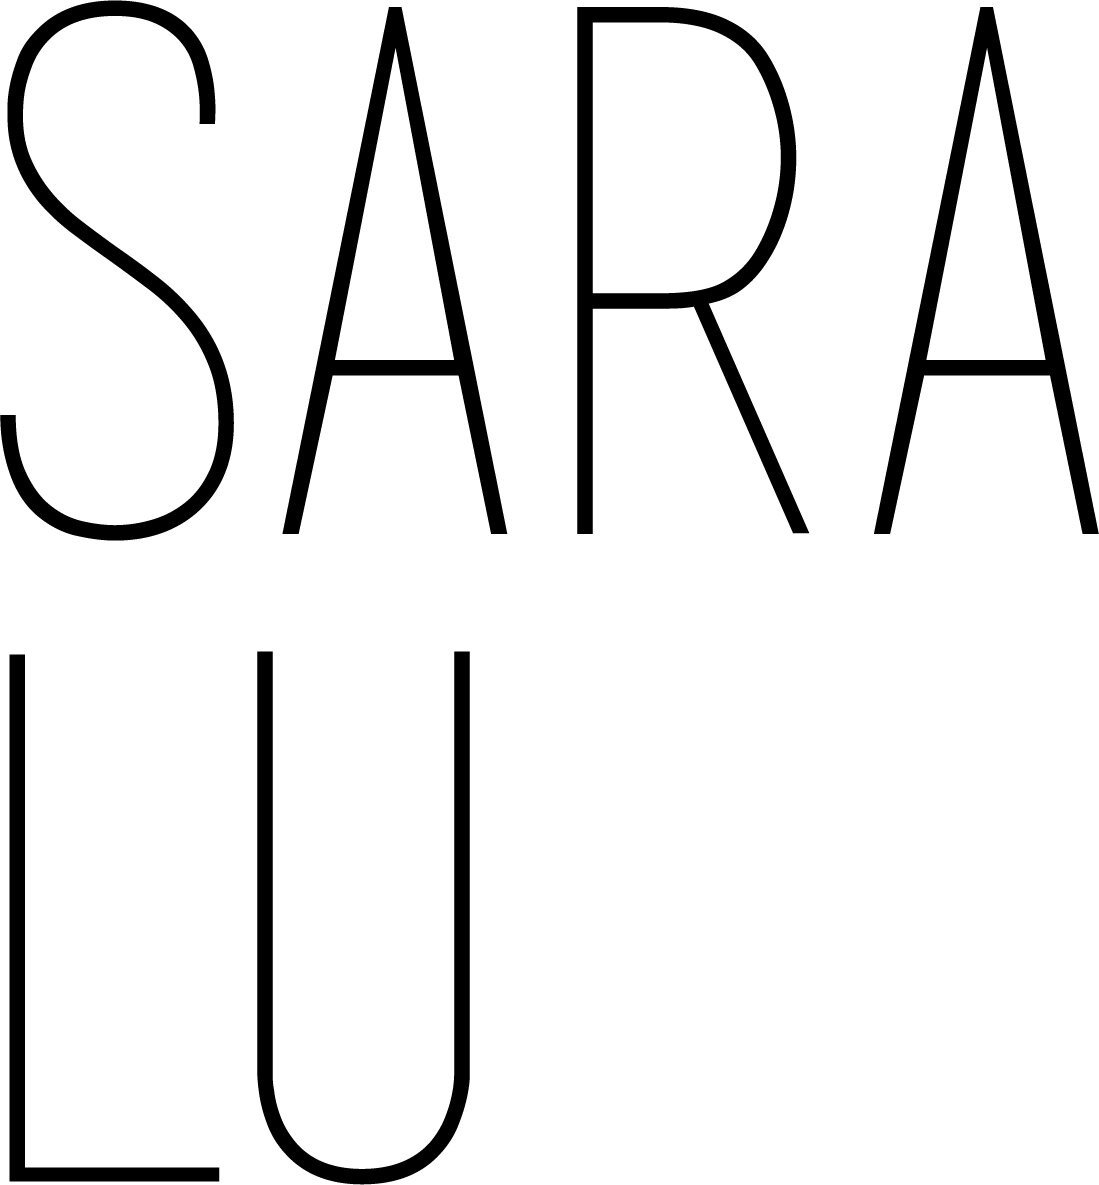 Sara Lu